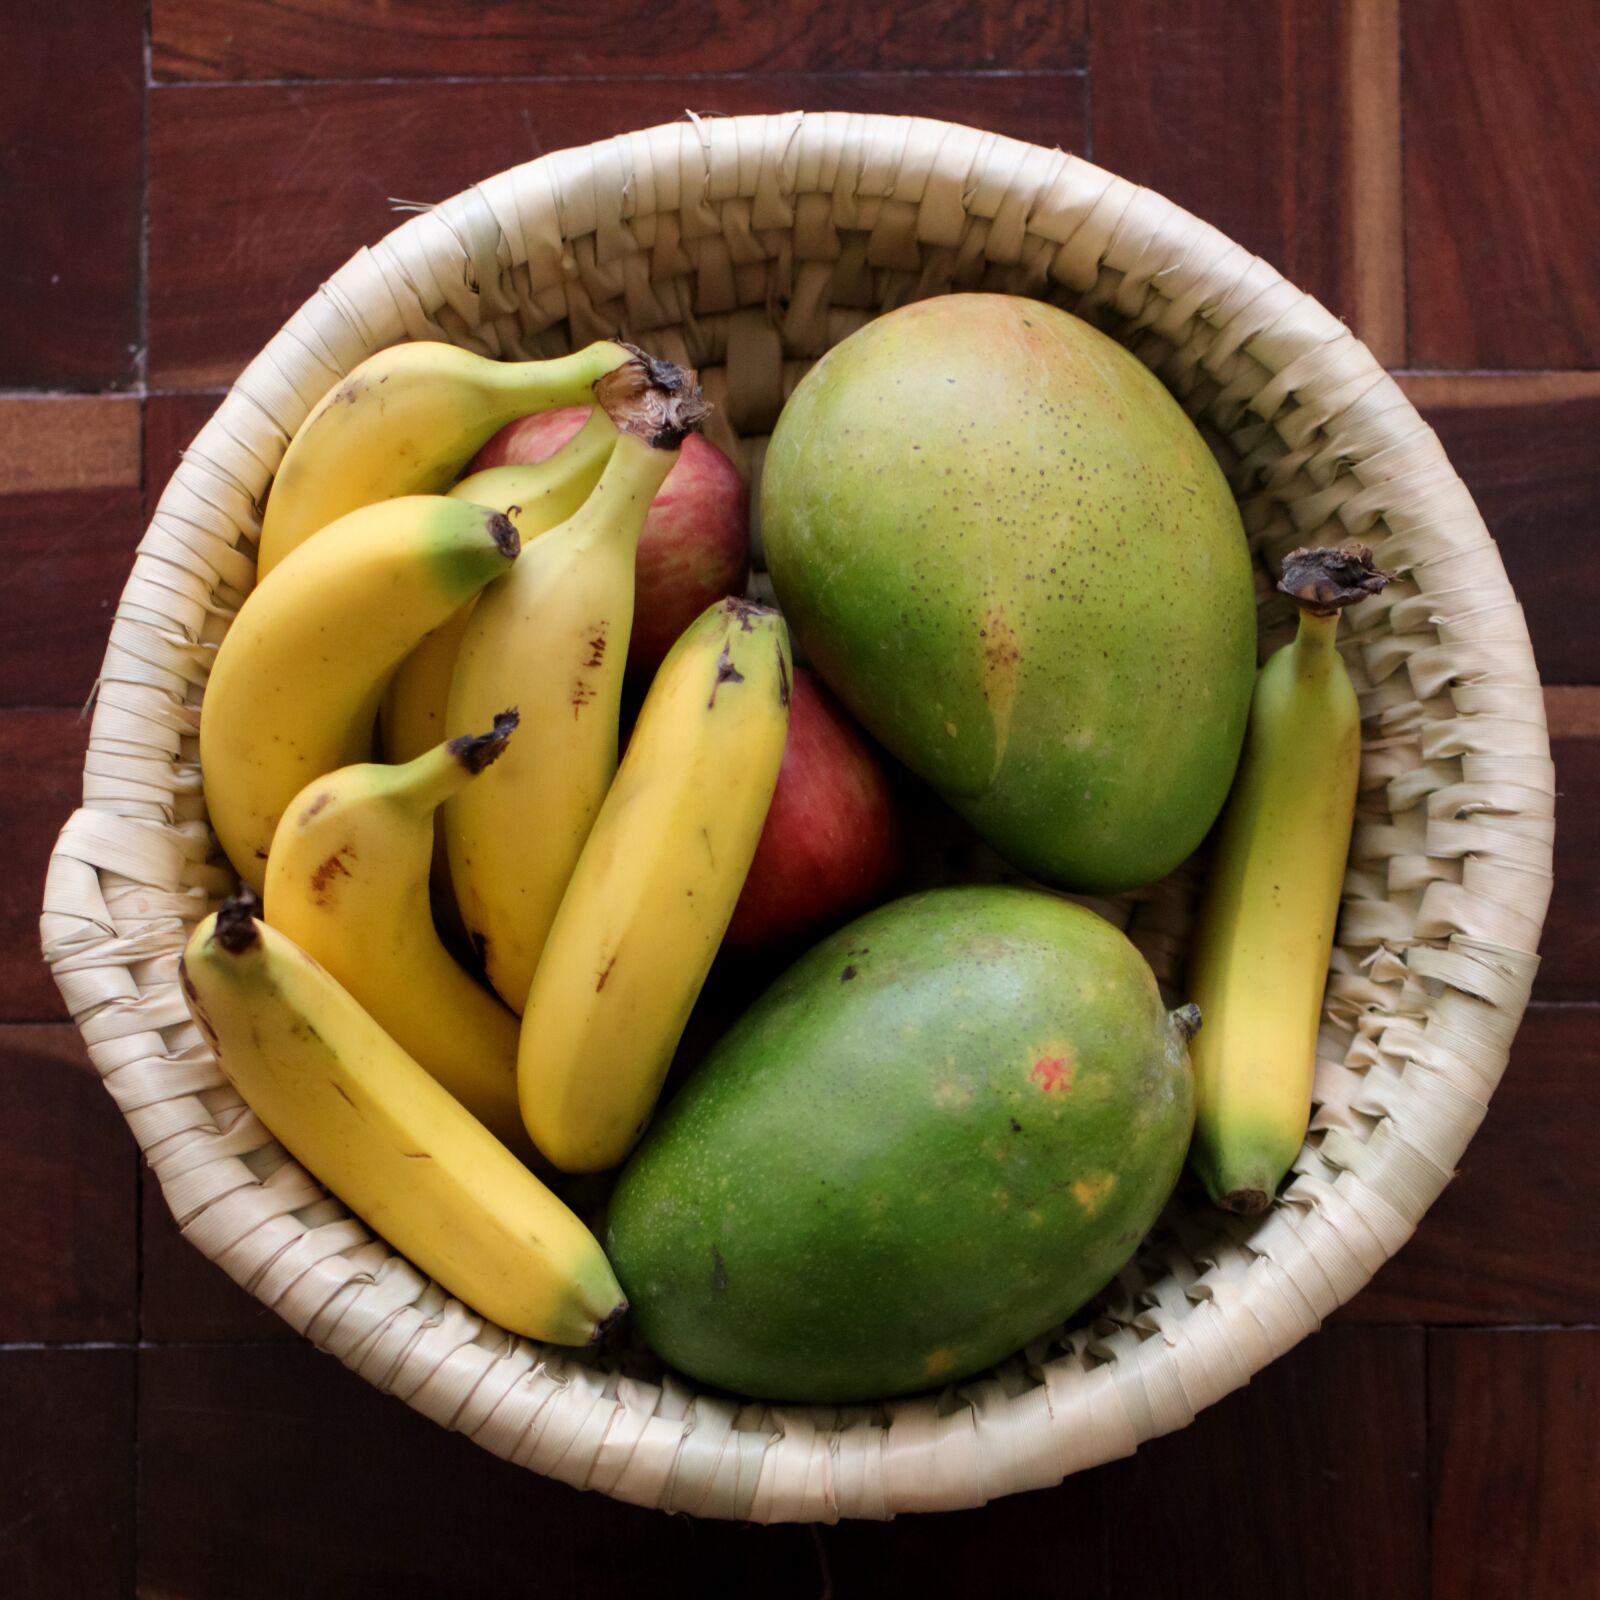 Tamron SP 45mm F1.8 Di VC USD sample photo. Fruits, mangoes, banana photography